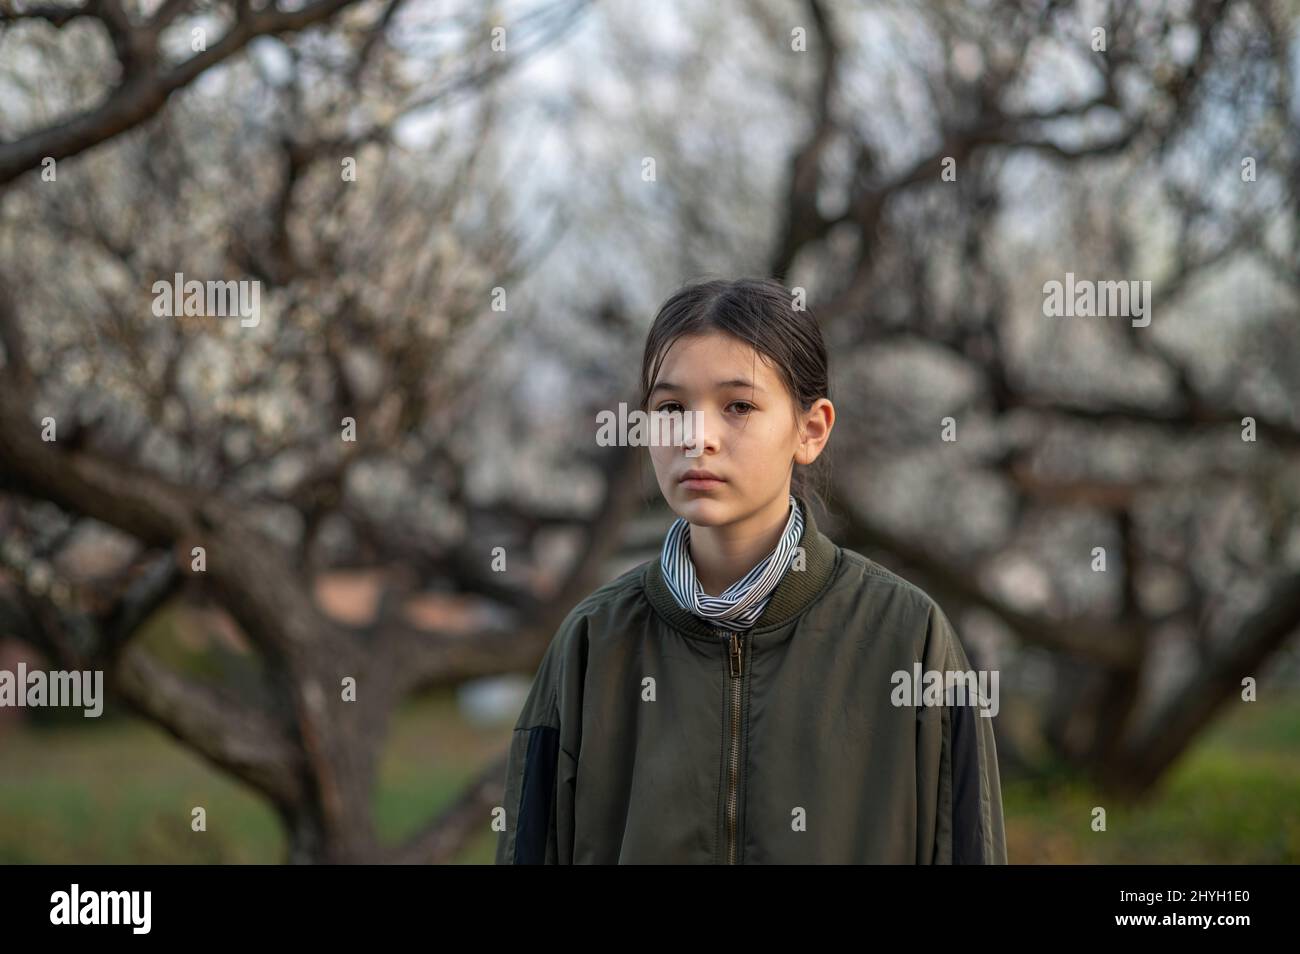 Porträt eines traurigen und kranken Mädchen vor dem Teenager in einem Park. Kind trägt eine grüne Jacke und Rollkragen. Blühende Bäume im Hintergrund. Frühling. Stockfoto